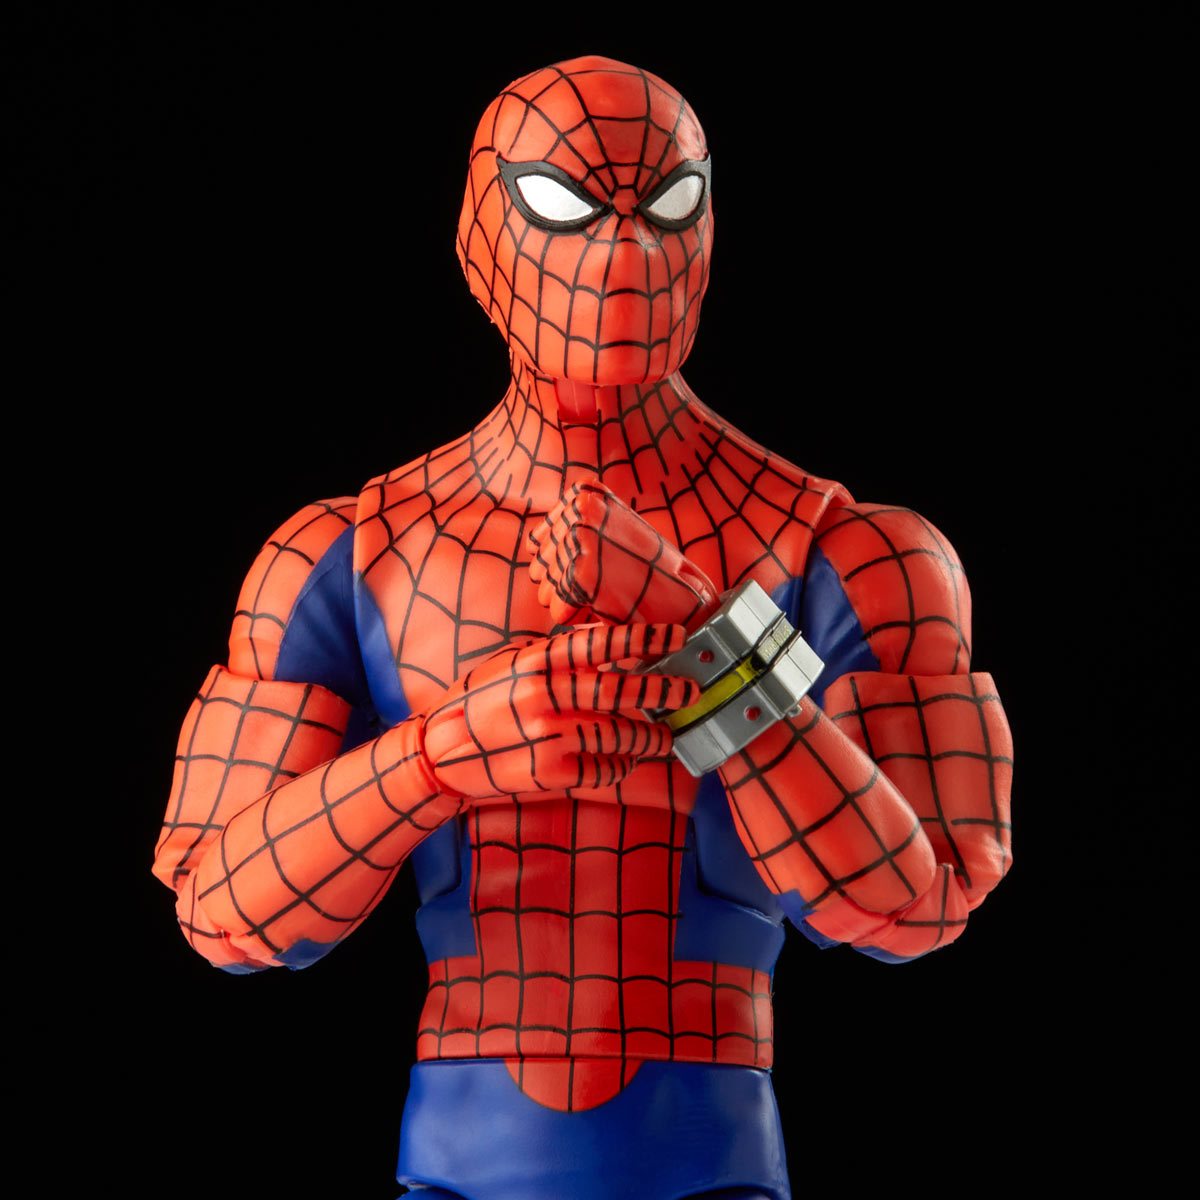 Spider-Man Marvel Legends LOT OF 2 Action Figures Japanese